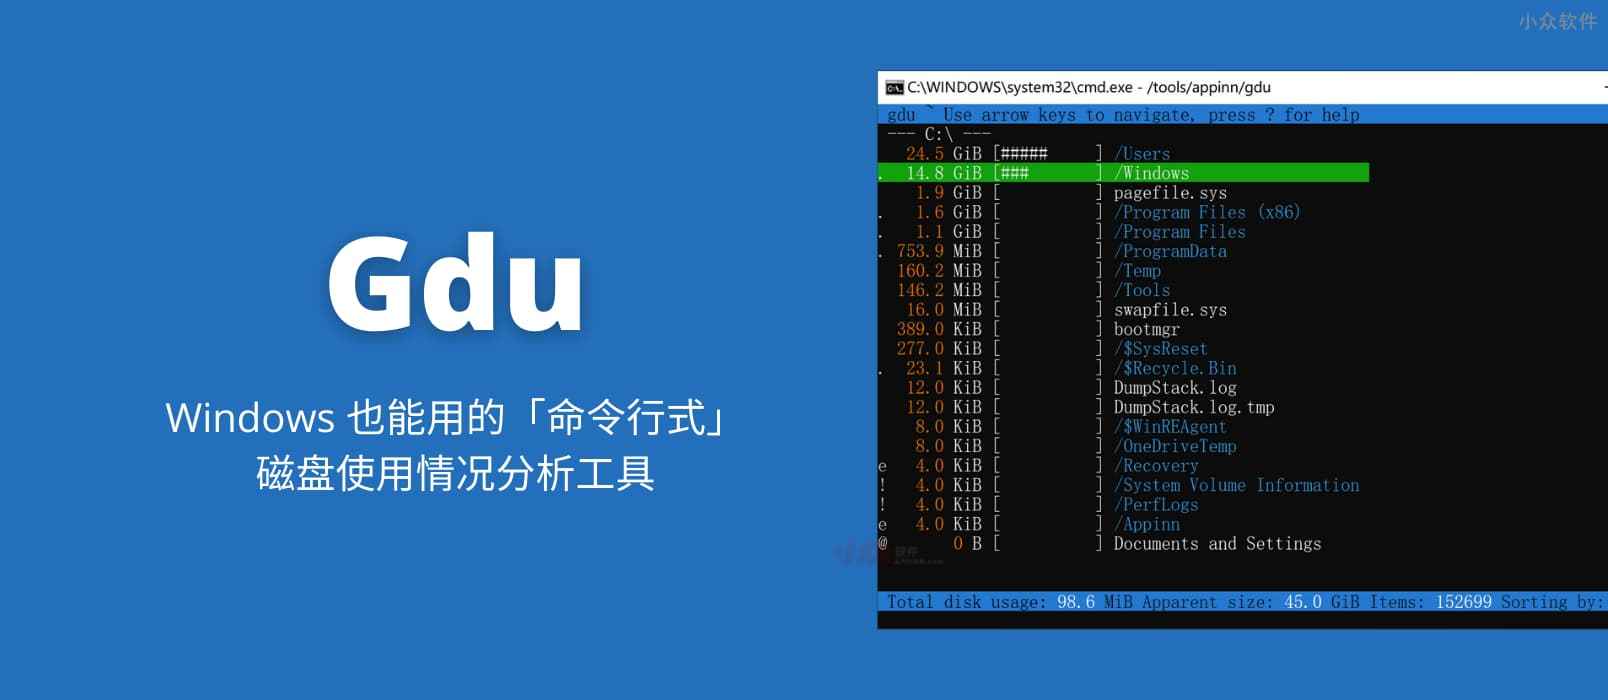 Gdu – Windows 也能用的「命令行式」磁盘使用情况分析工具